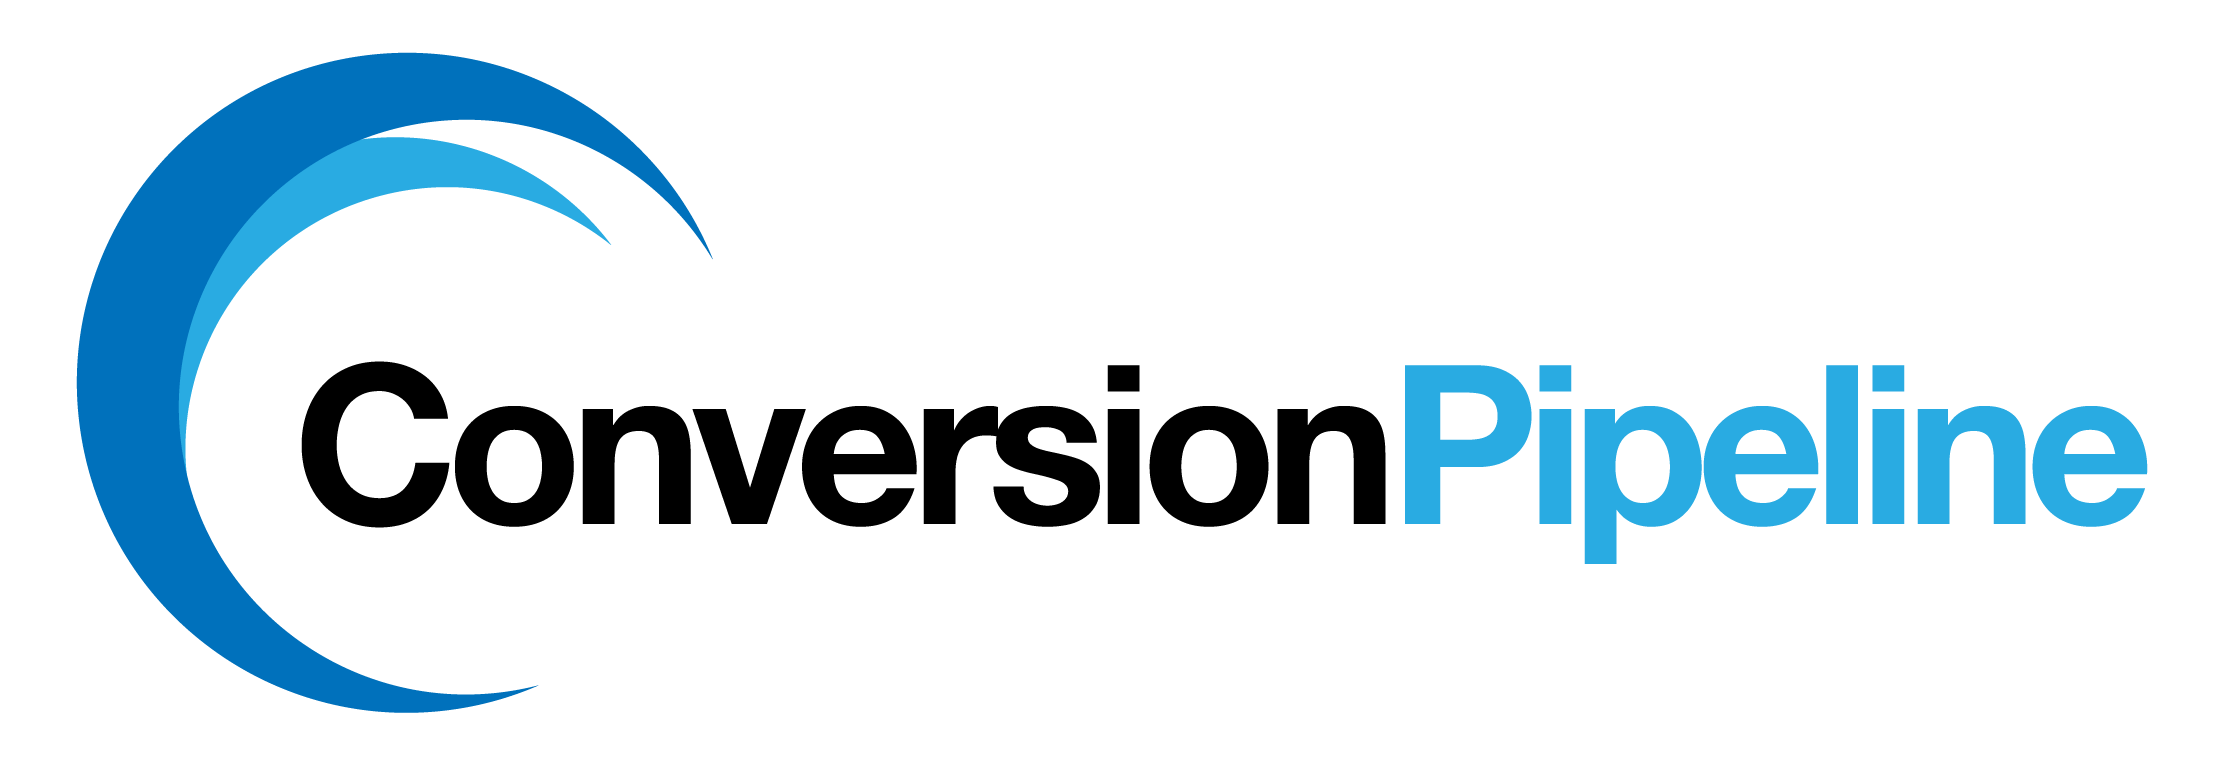 Conversion Pipeline logo